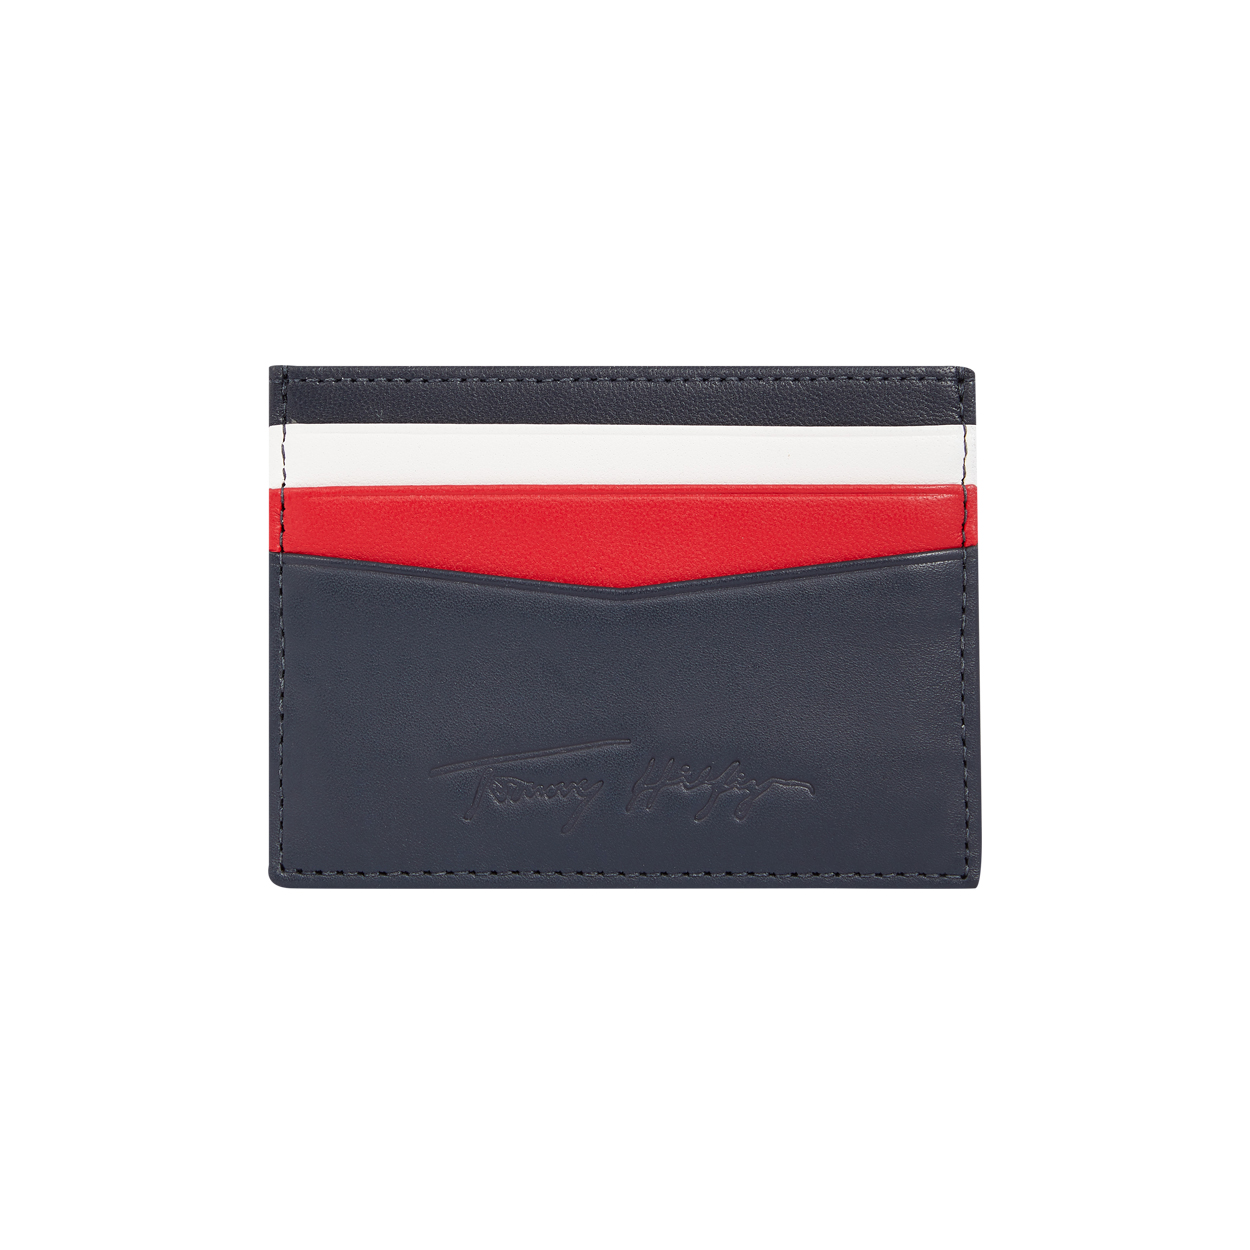 Porte-cartes Tommy Hilfiger en cuir bleu marine à empiècements blancs et rouges